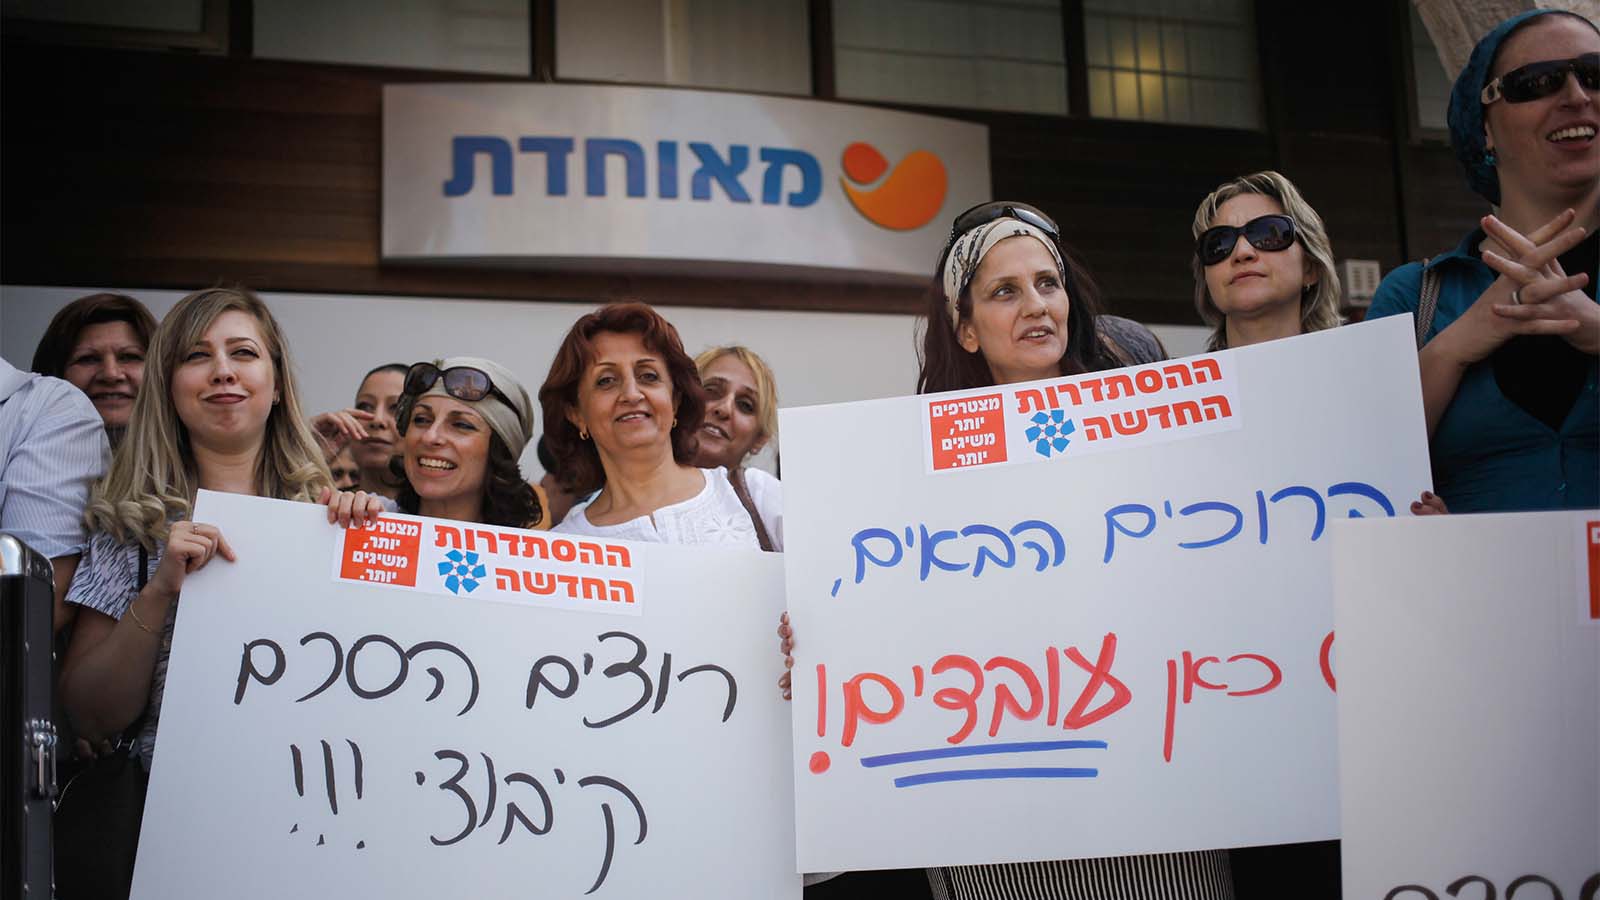 הסבב הקודם. עובדות קופת חולים מאוחדת מפגינות מול המרפאה הראשית של הקופה בירושלים בדרישה להסכם קיבוצי. מאי 2013 (צילום: פלאש90)